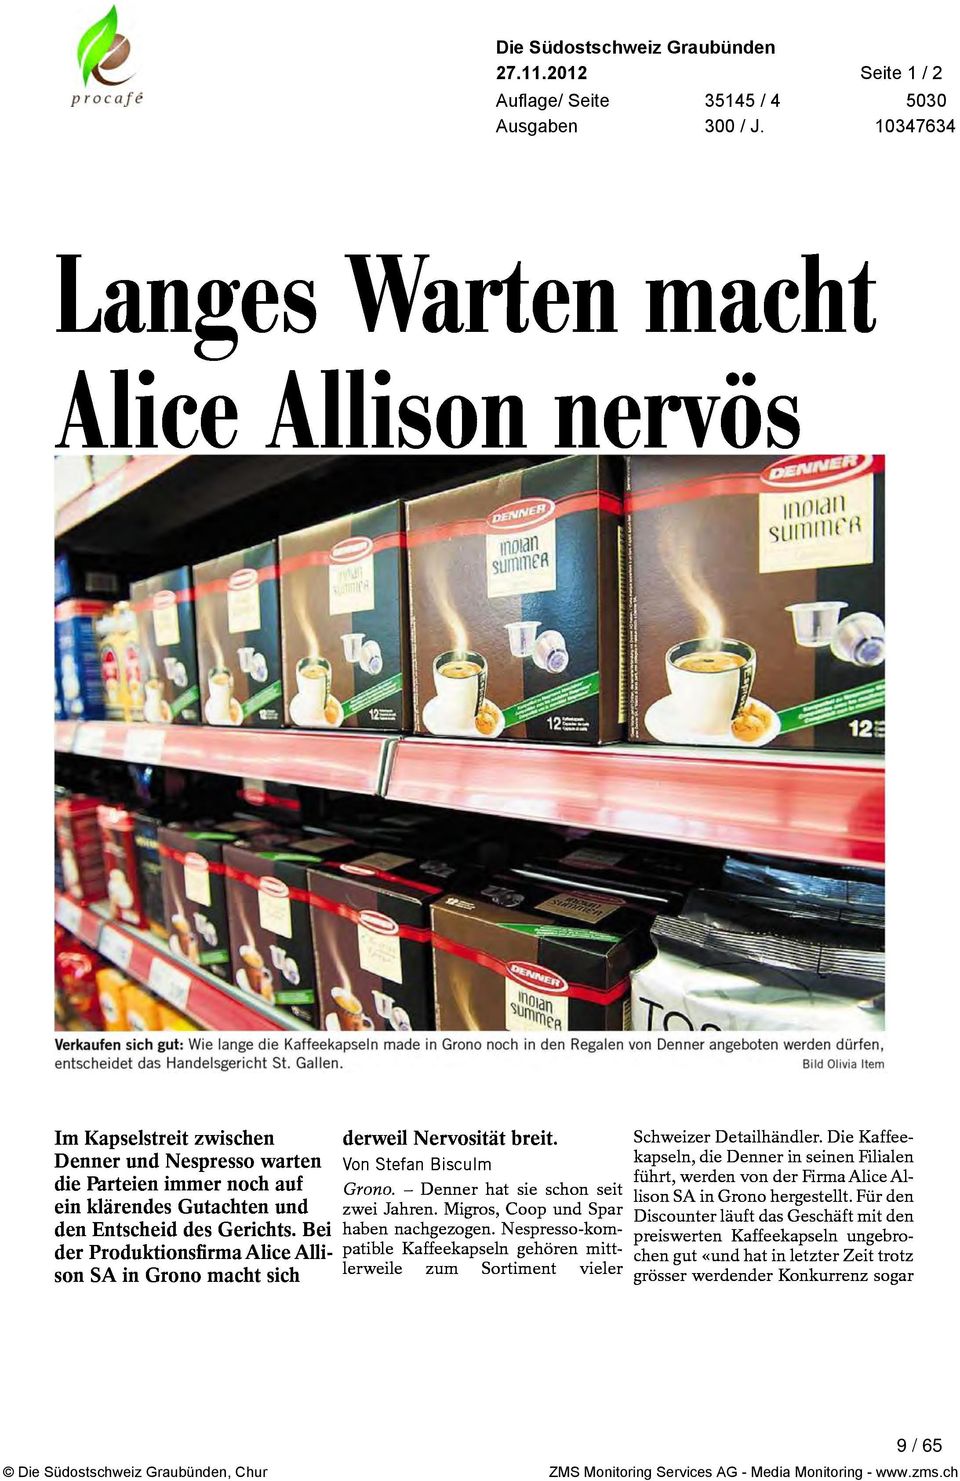 Produktionsfirma Alice Alli son SA in Grono macht sich derweil Nervosität breit Von Stefan Bisculm Grono Denner hat sie schon seit zwei Jahren Migros Coop und Spar haben nachgezogen Nespresso kom